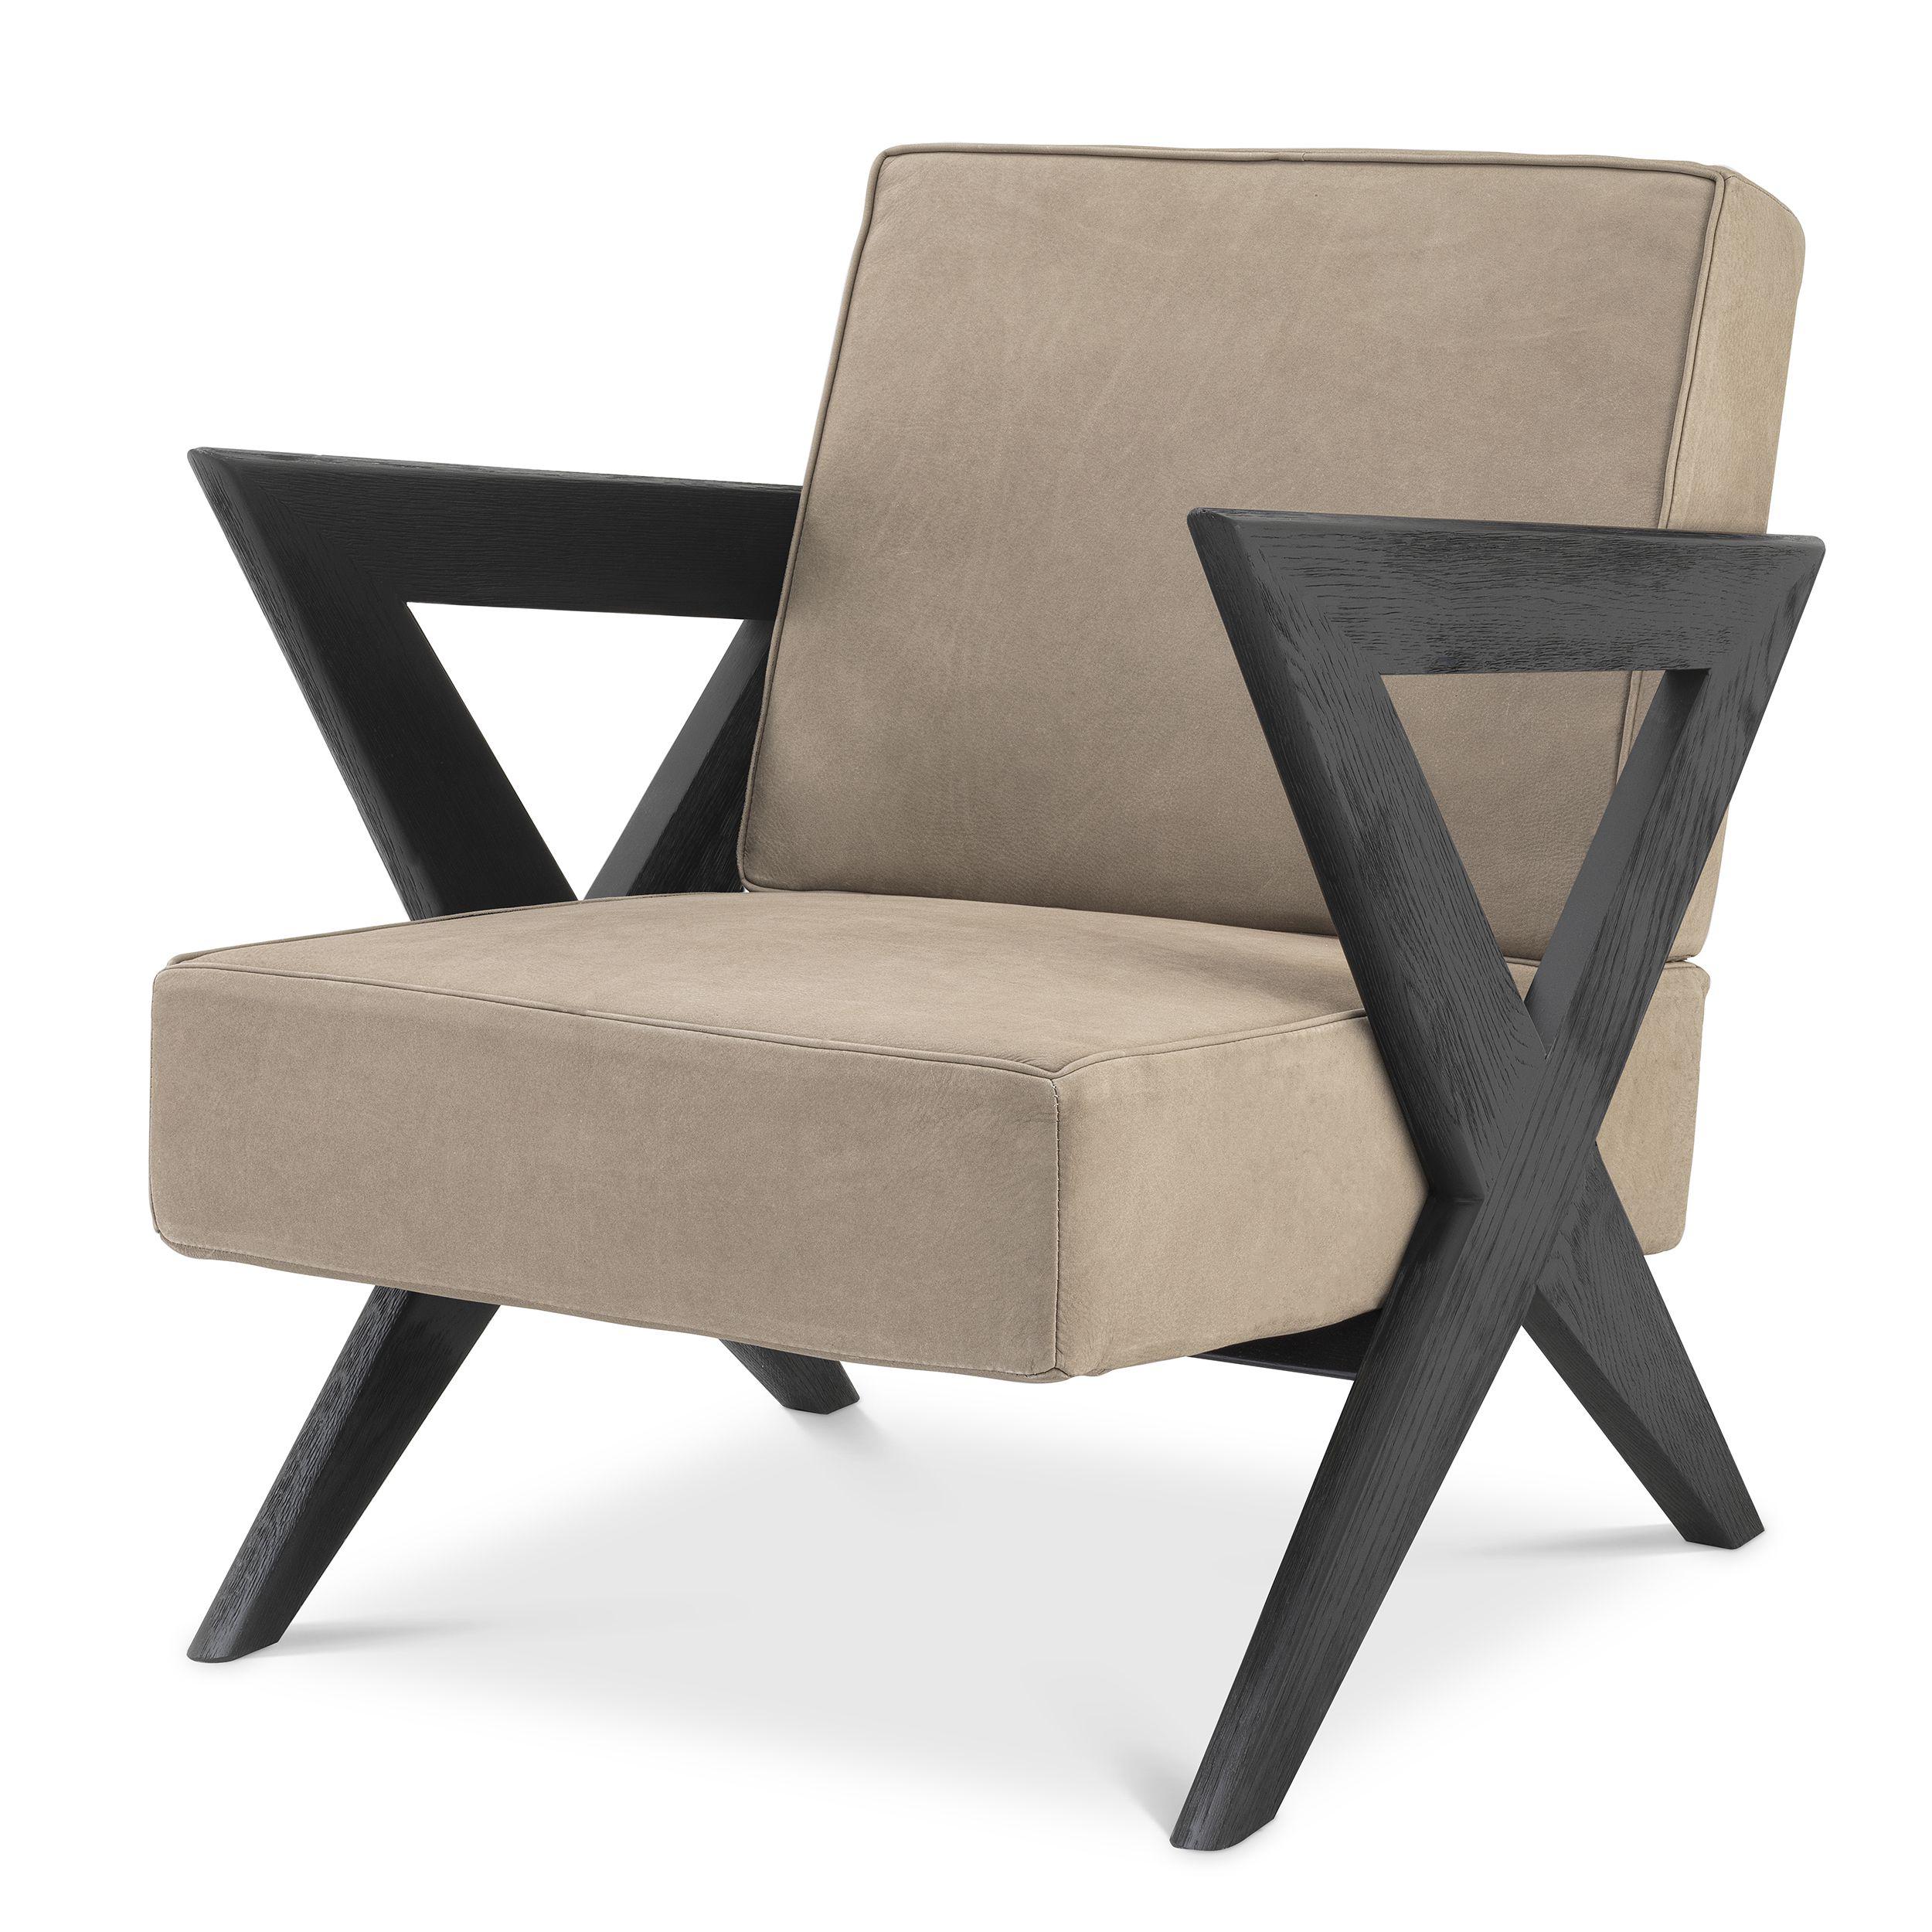 Купить Кресло Chair Felippe в интернет-магазине roooms.ru